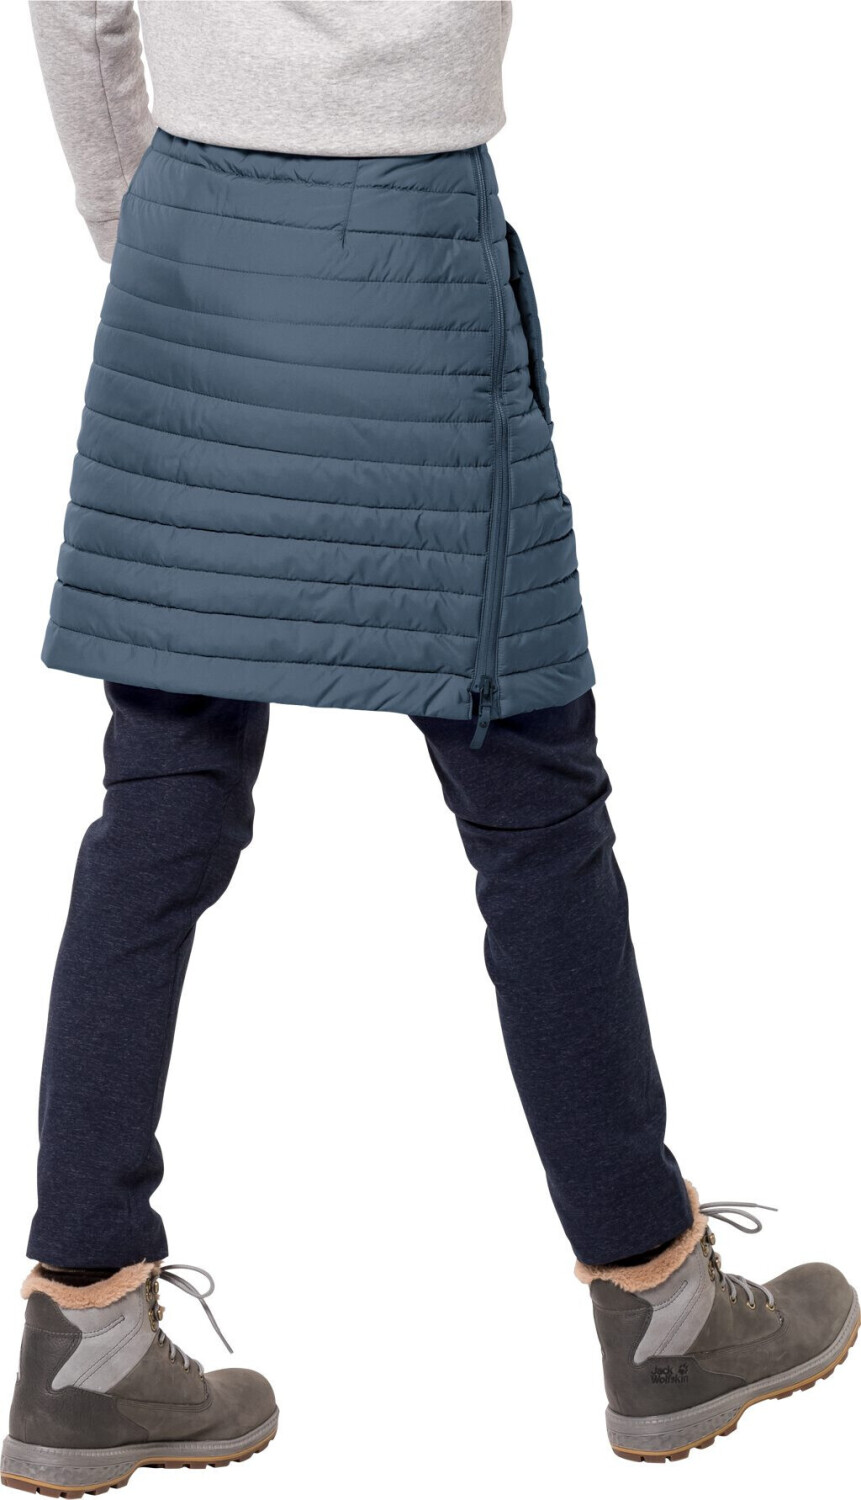 Jack Wolfskin Iceguard Skirt € ab frost (1503093) bei | 60,00 Preisvergleich blue